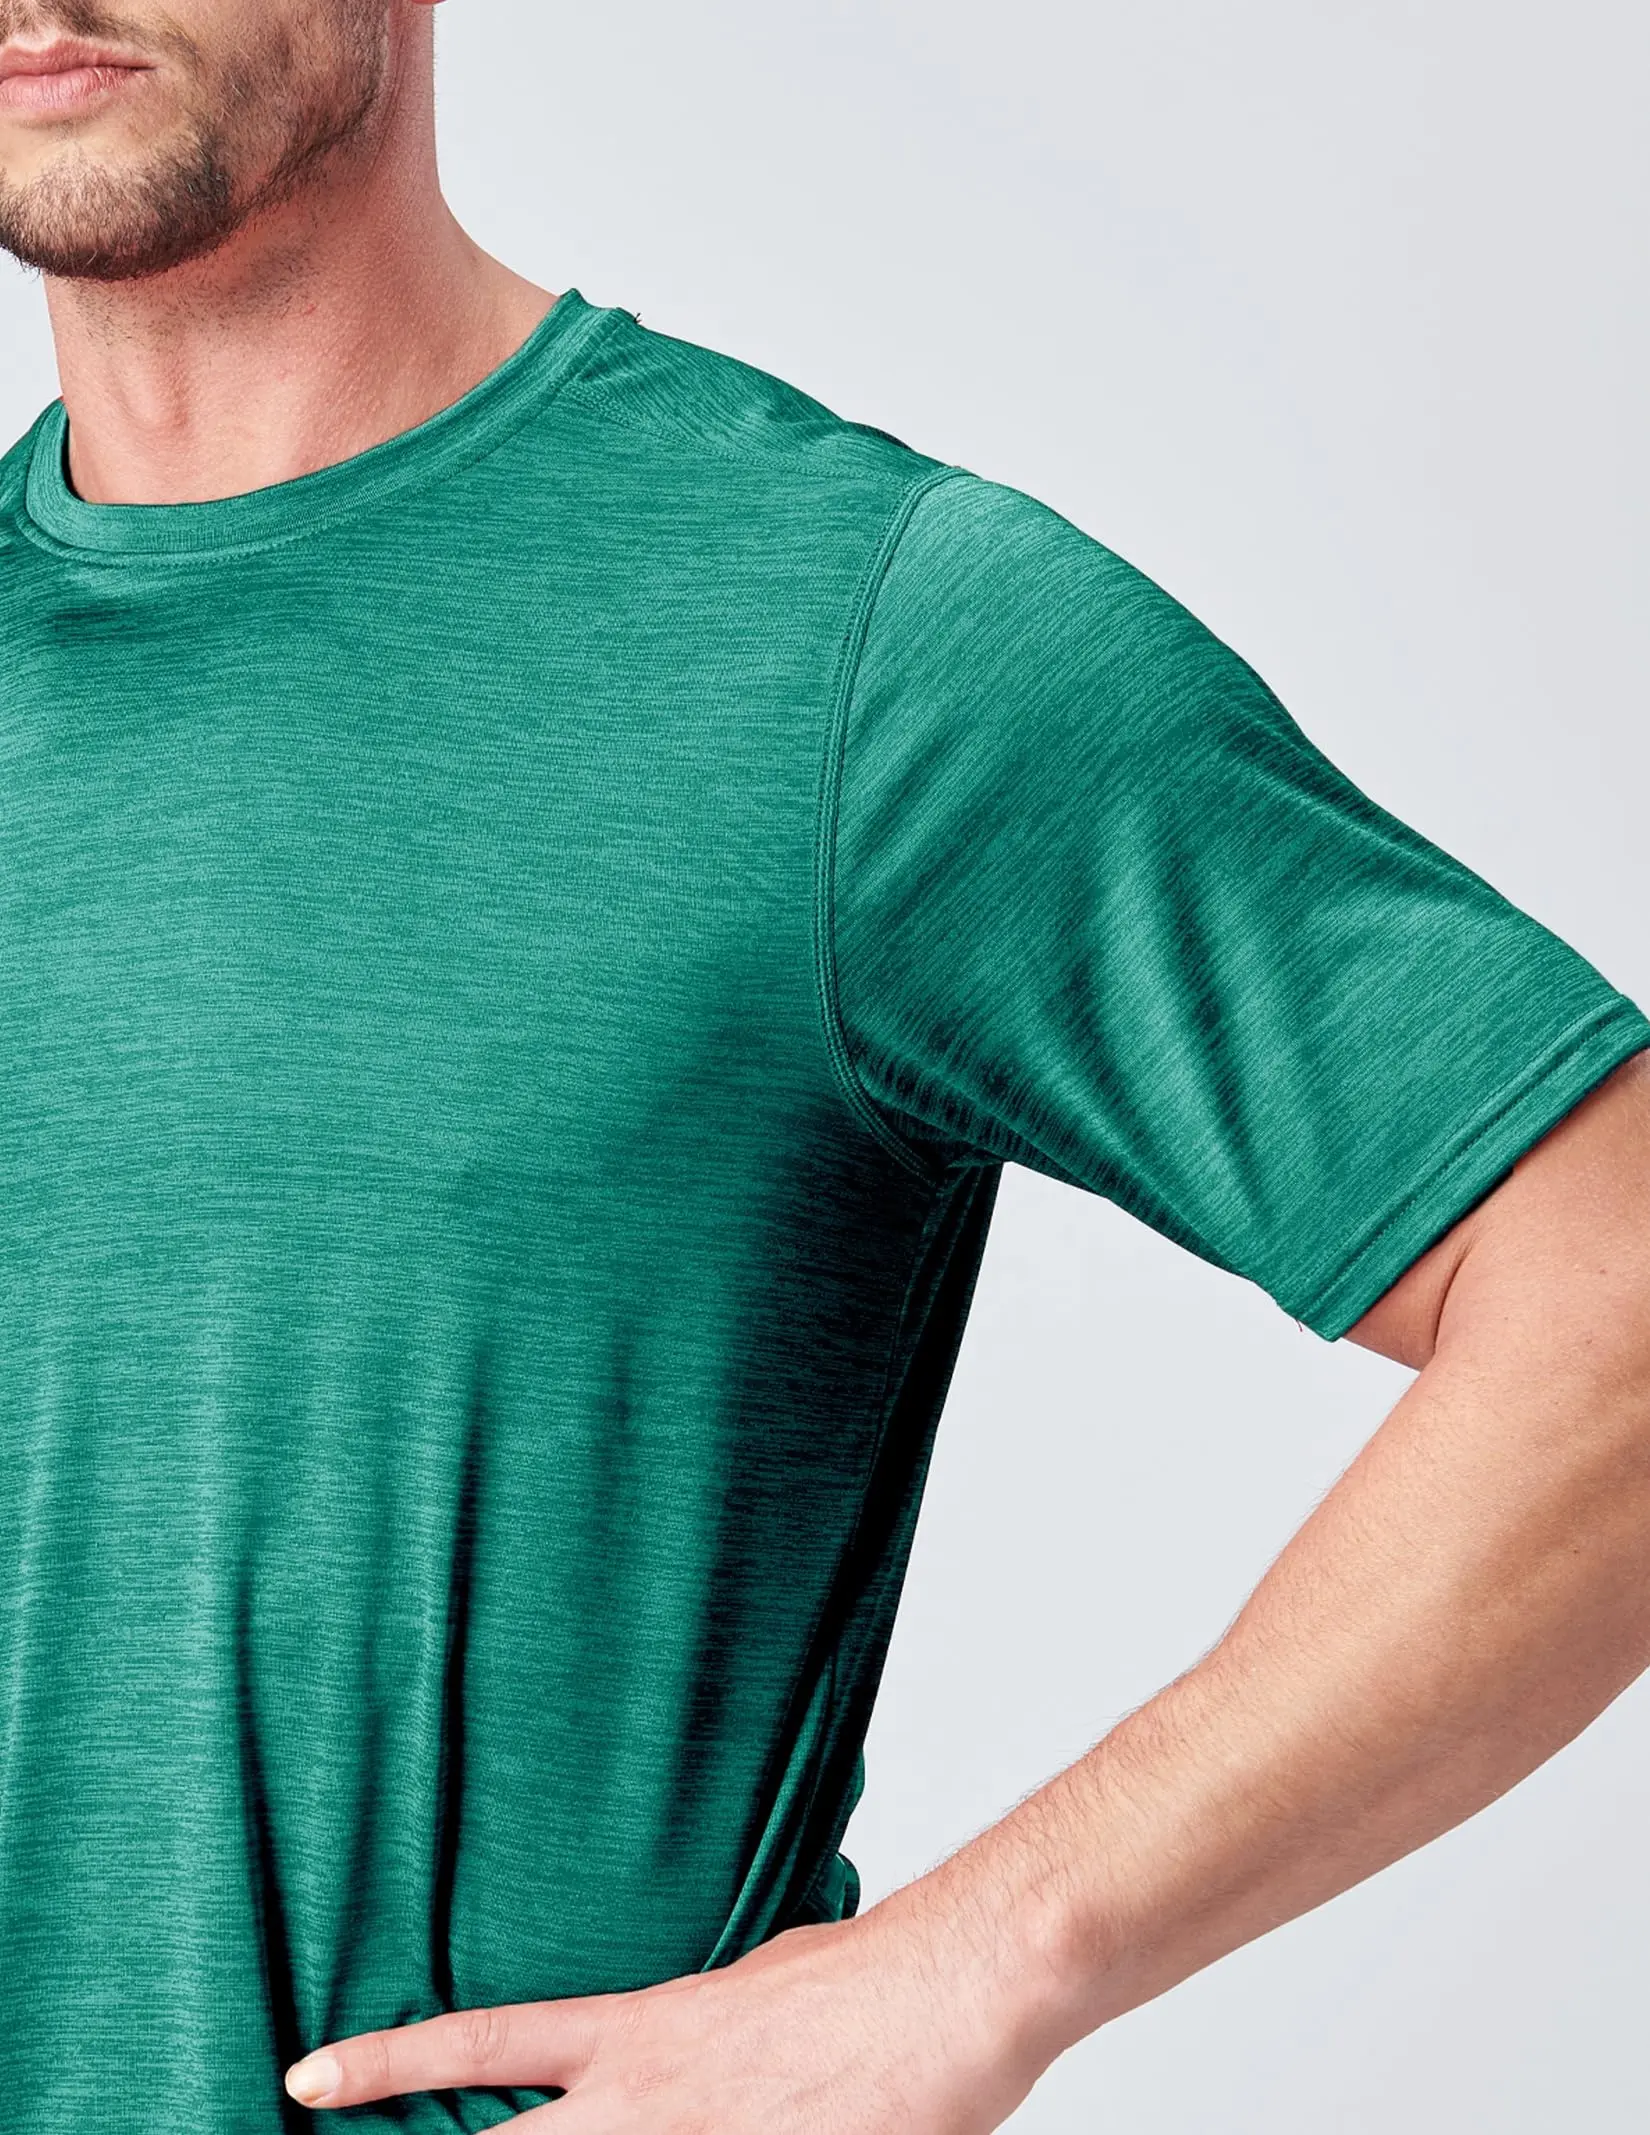 Camiseta deportiva holgada de entrenamiento de algodón de alta elasticidad para hombre, Camiseta deportiva para gimnasio, camiseta con serigrafía, camiseta de ajuste relajado